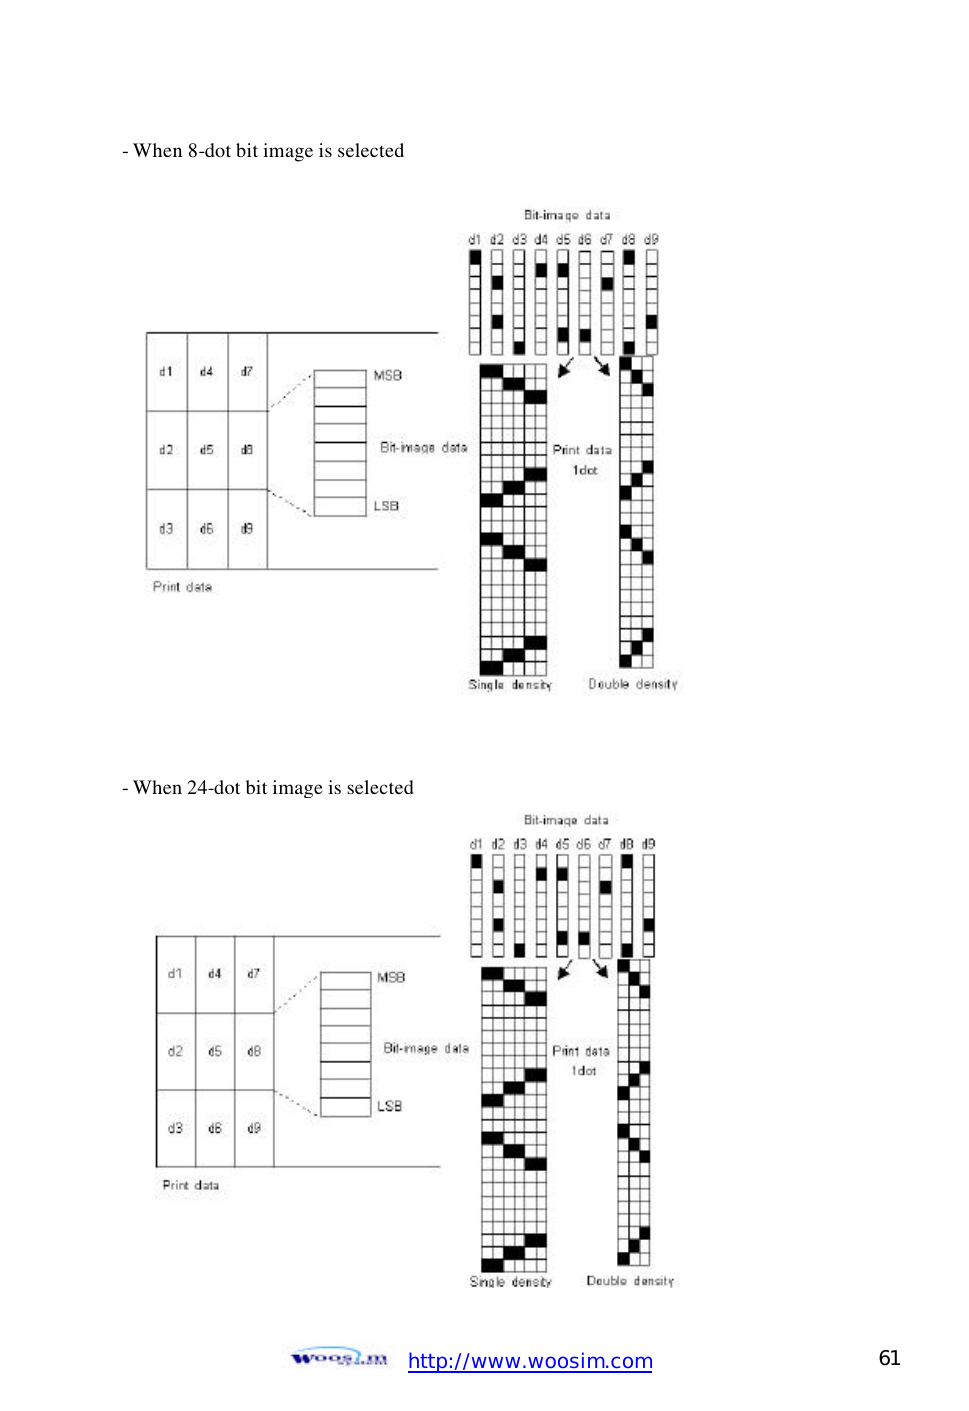  http://www.woosim.com 61                                - When 8-dot bit image is selected                 - When 24-dot bit image is selected  